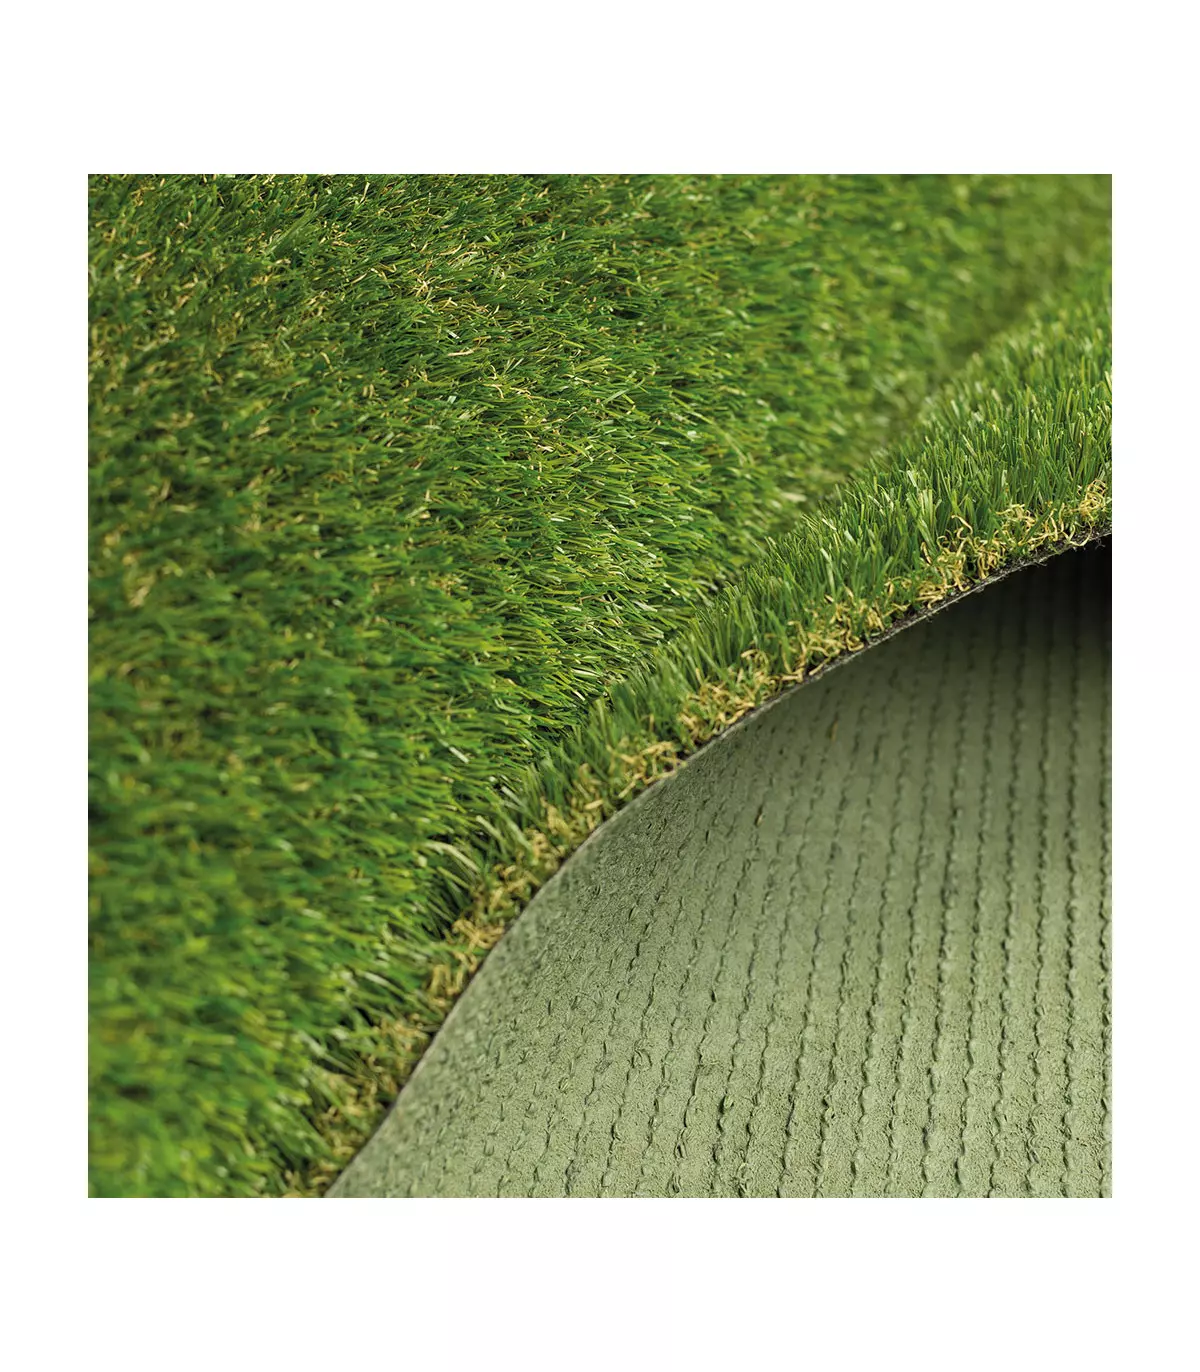 Prato artificiale per terrazzi e giardini, in rotoli alti 30 mm